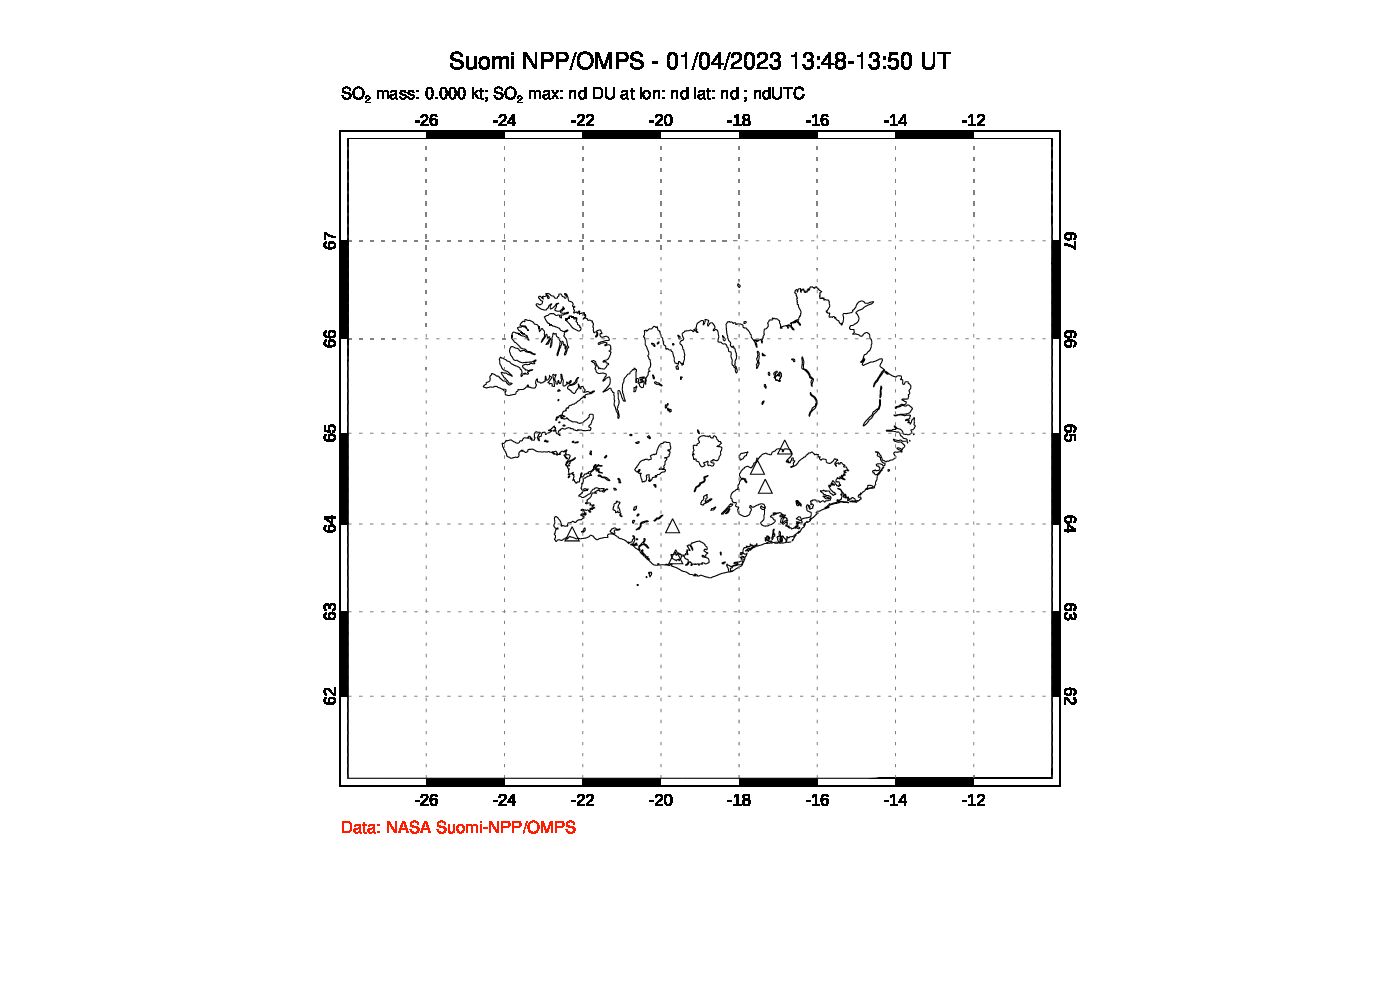 A sulfur dioxide image over Iceland on Jan 04, 2023.